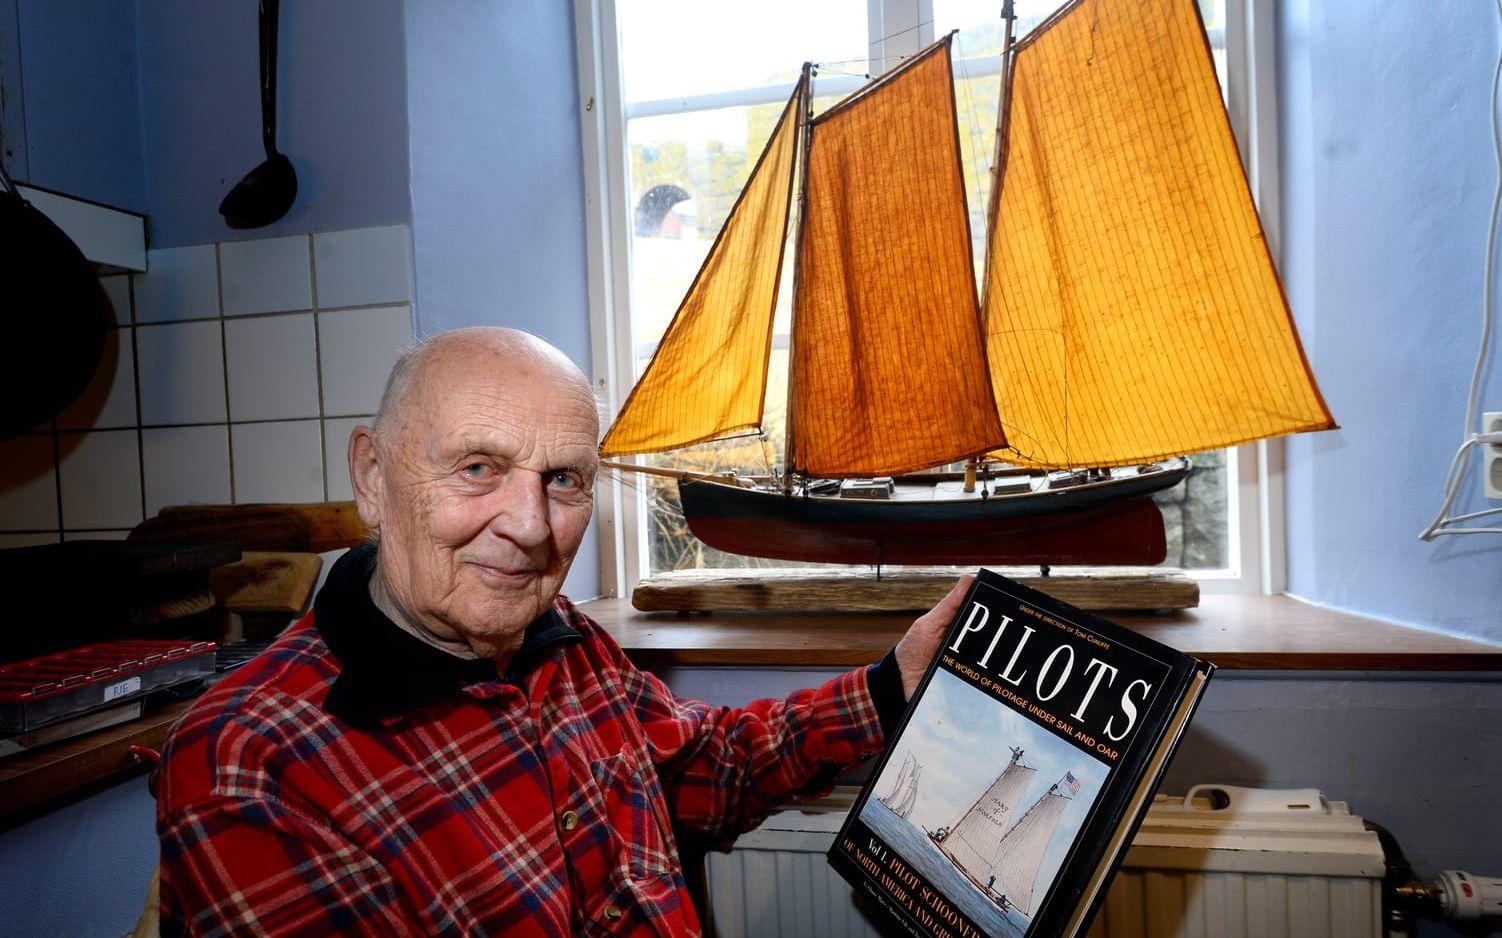 Ville bli sjöman. Bernt hade till och med sjömansbok, men så kom kriget. I dag är ett av hans intressen att bygg a modellbåtar i trä, som den amerikanska lotsskonaren.